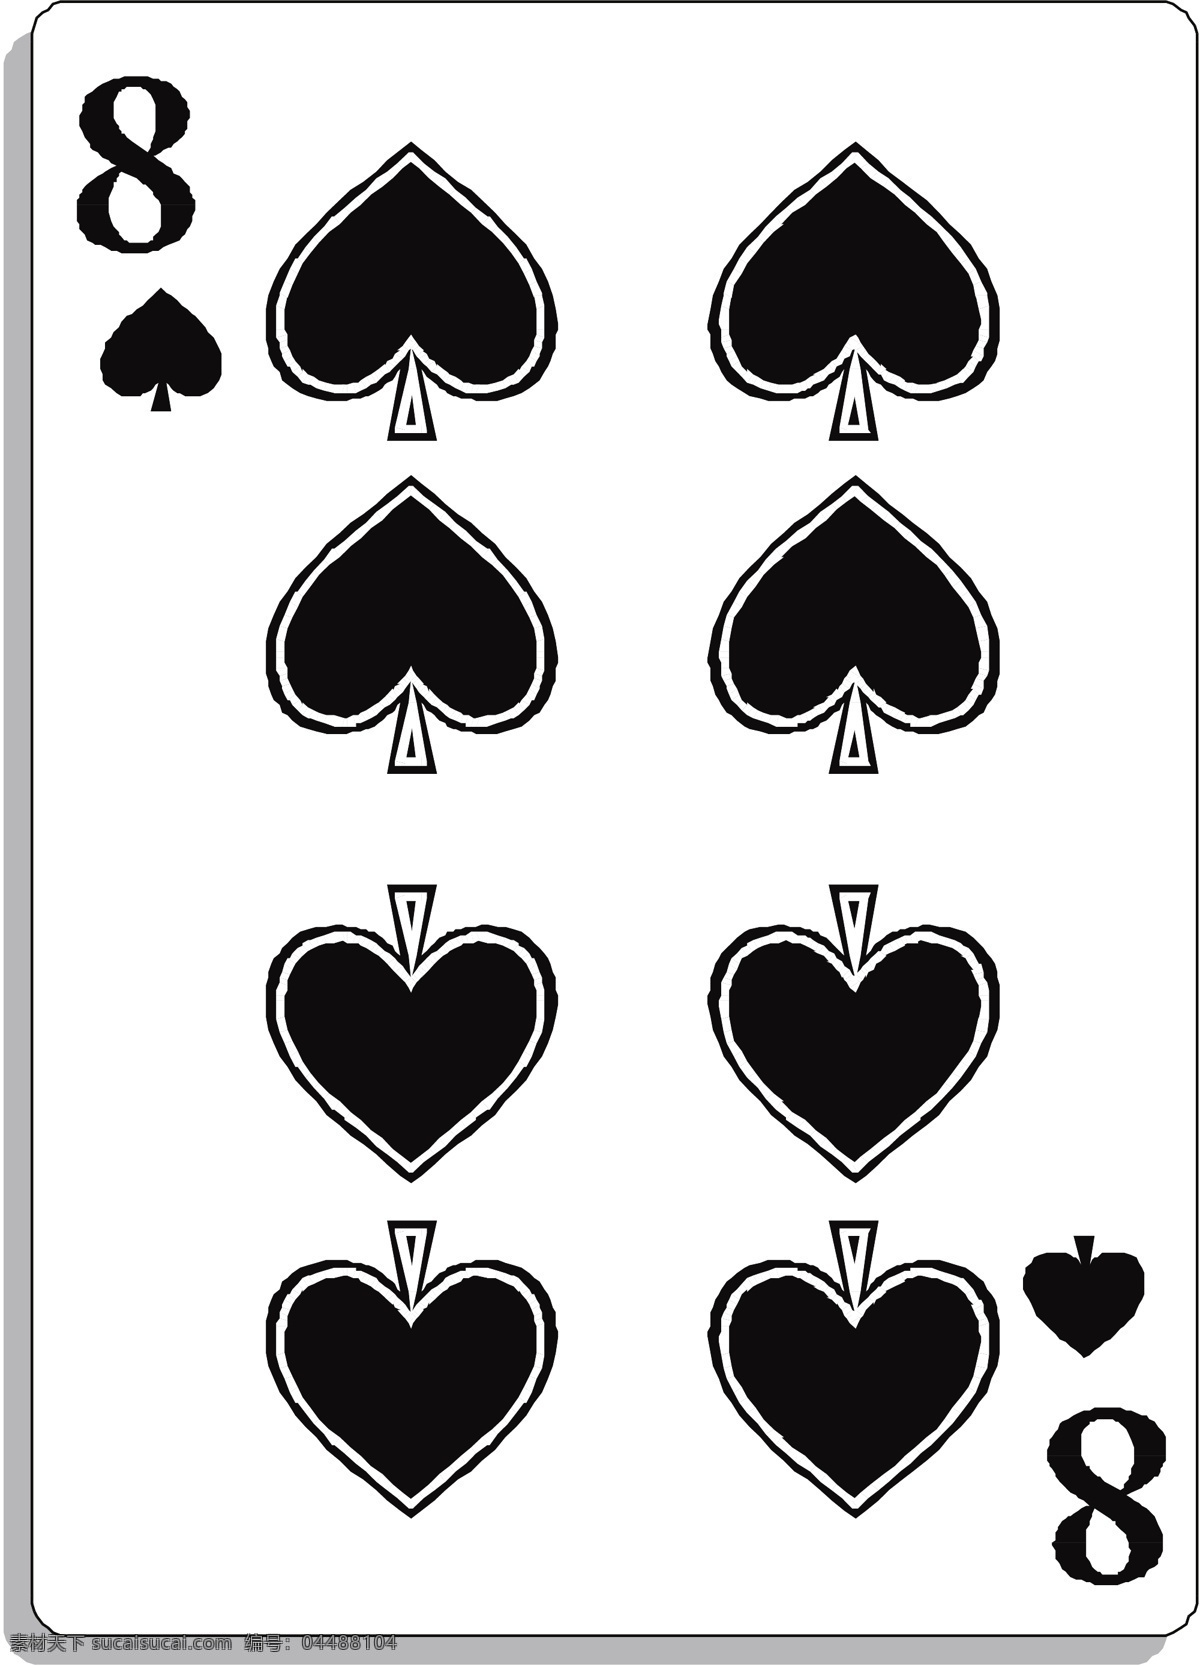 扑克牌矢量图 矢量下载 网页矢量 商业矢量 矢量运动 白色